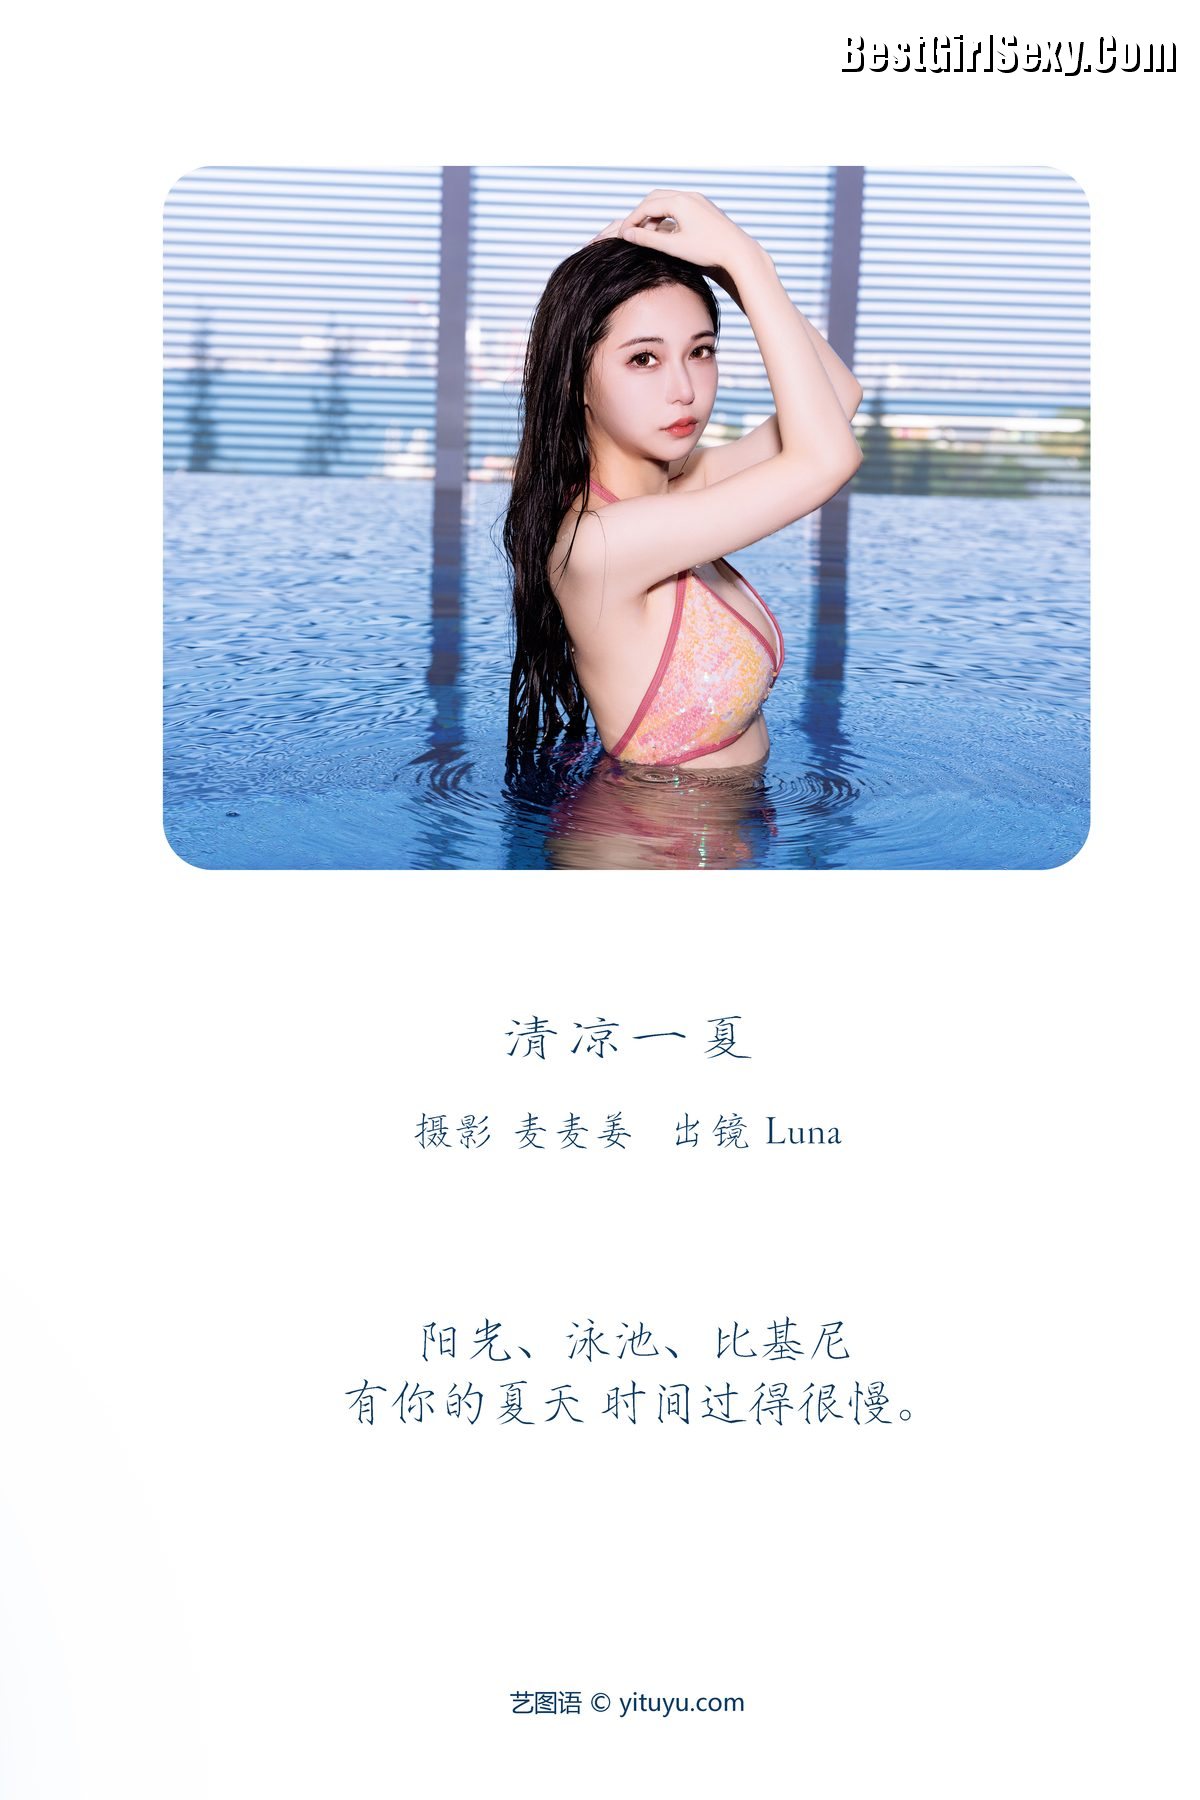 YiTuYu艺图语 Vol 3848 Luna 0002 6398549159.jpg